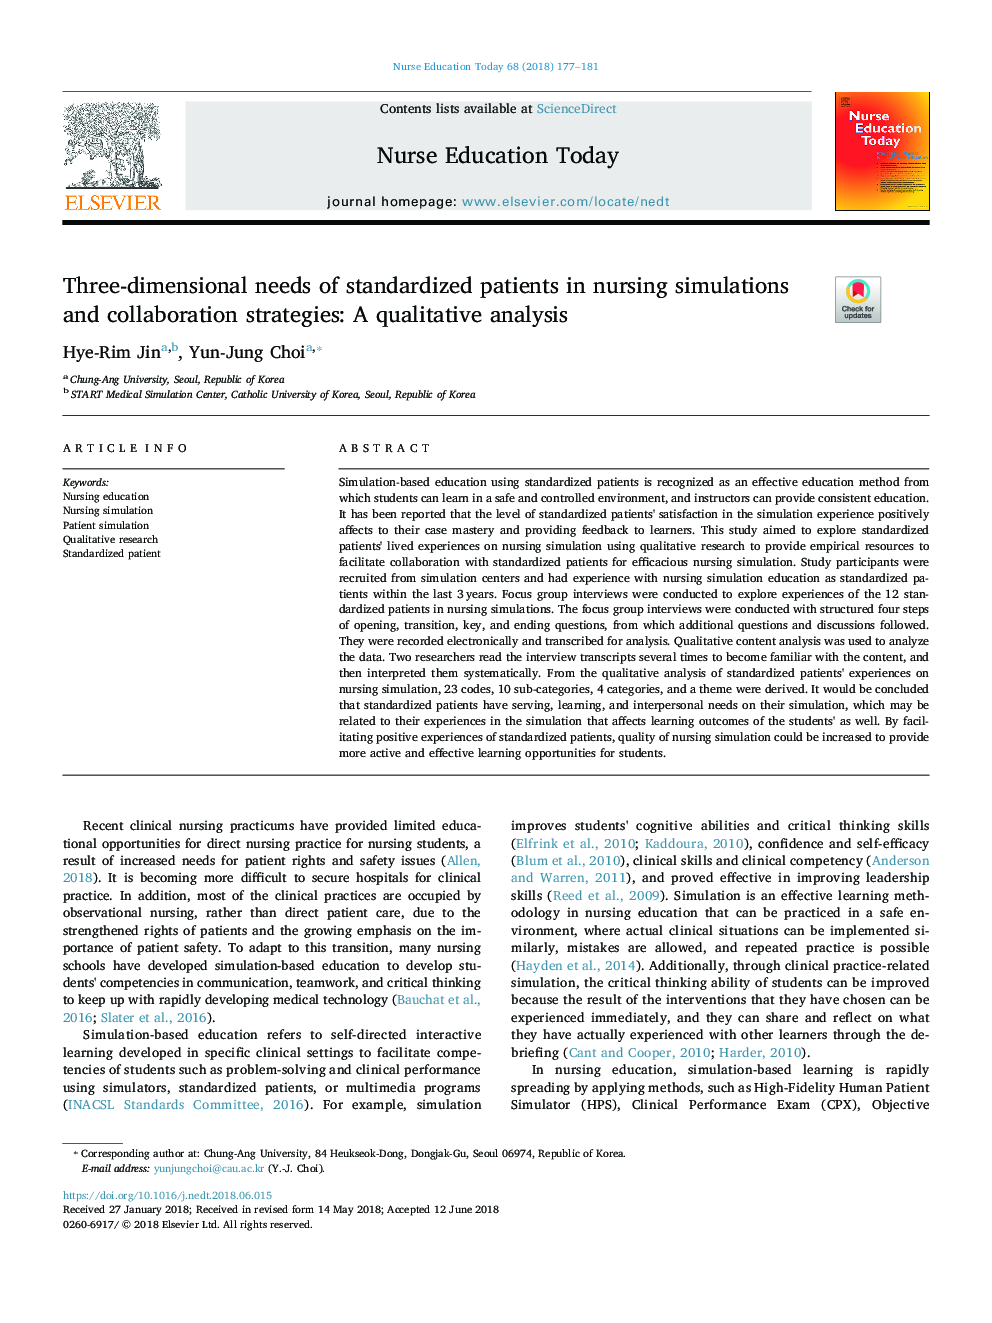 نیازهای سه بعدی بیماران استاندارد شده در شبیه سازی و استراتژی های همکاری پرستاران: یک تحلیل کیفی 